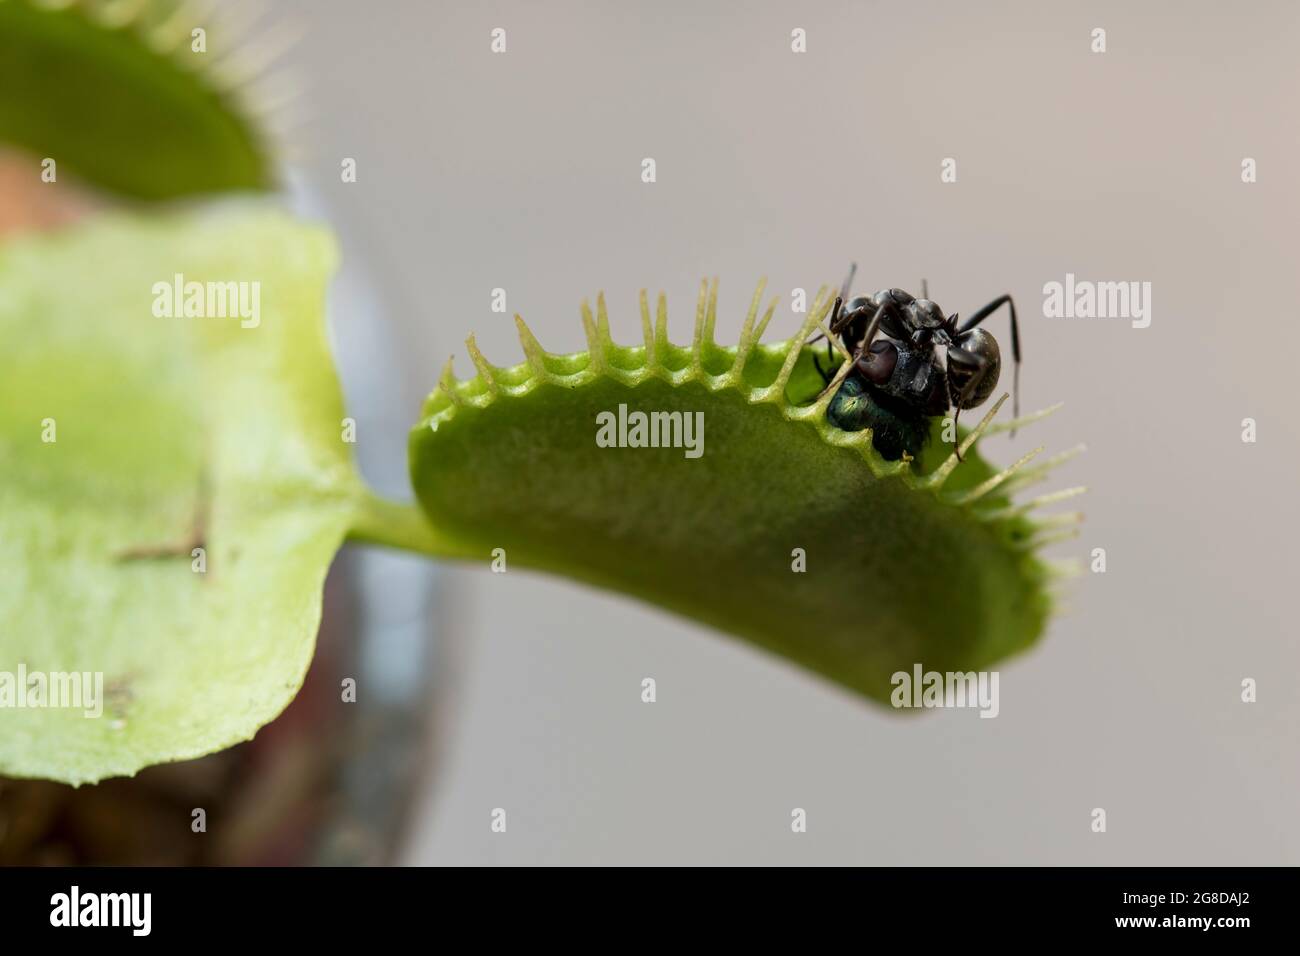 Formica che mangia mosca catturata nella trappola della mosca. Insetti affamati alla ricerca di cibo. Foto Stock